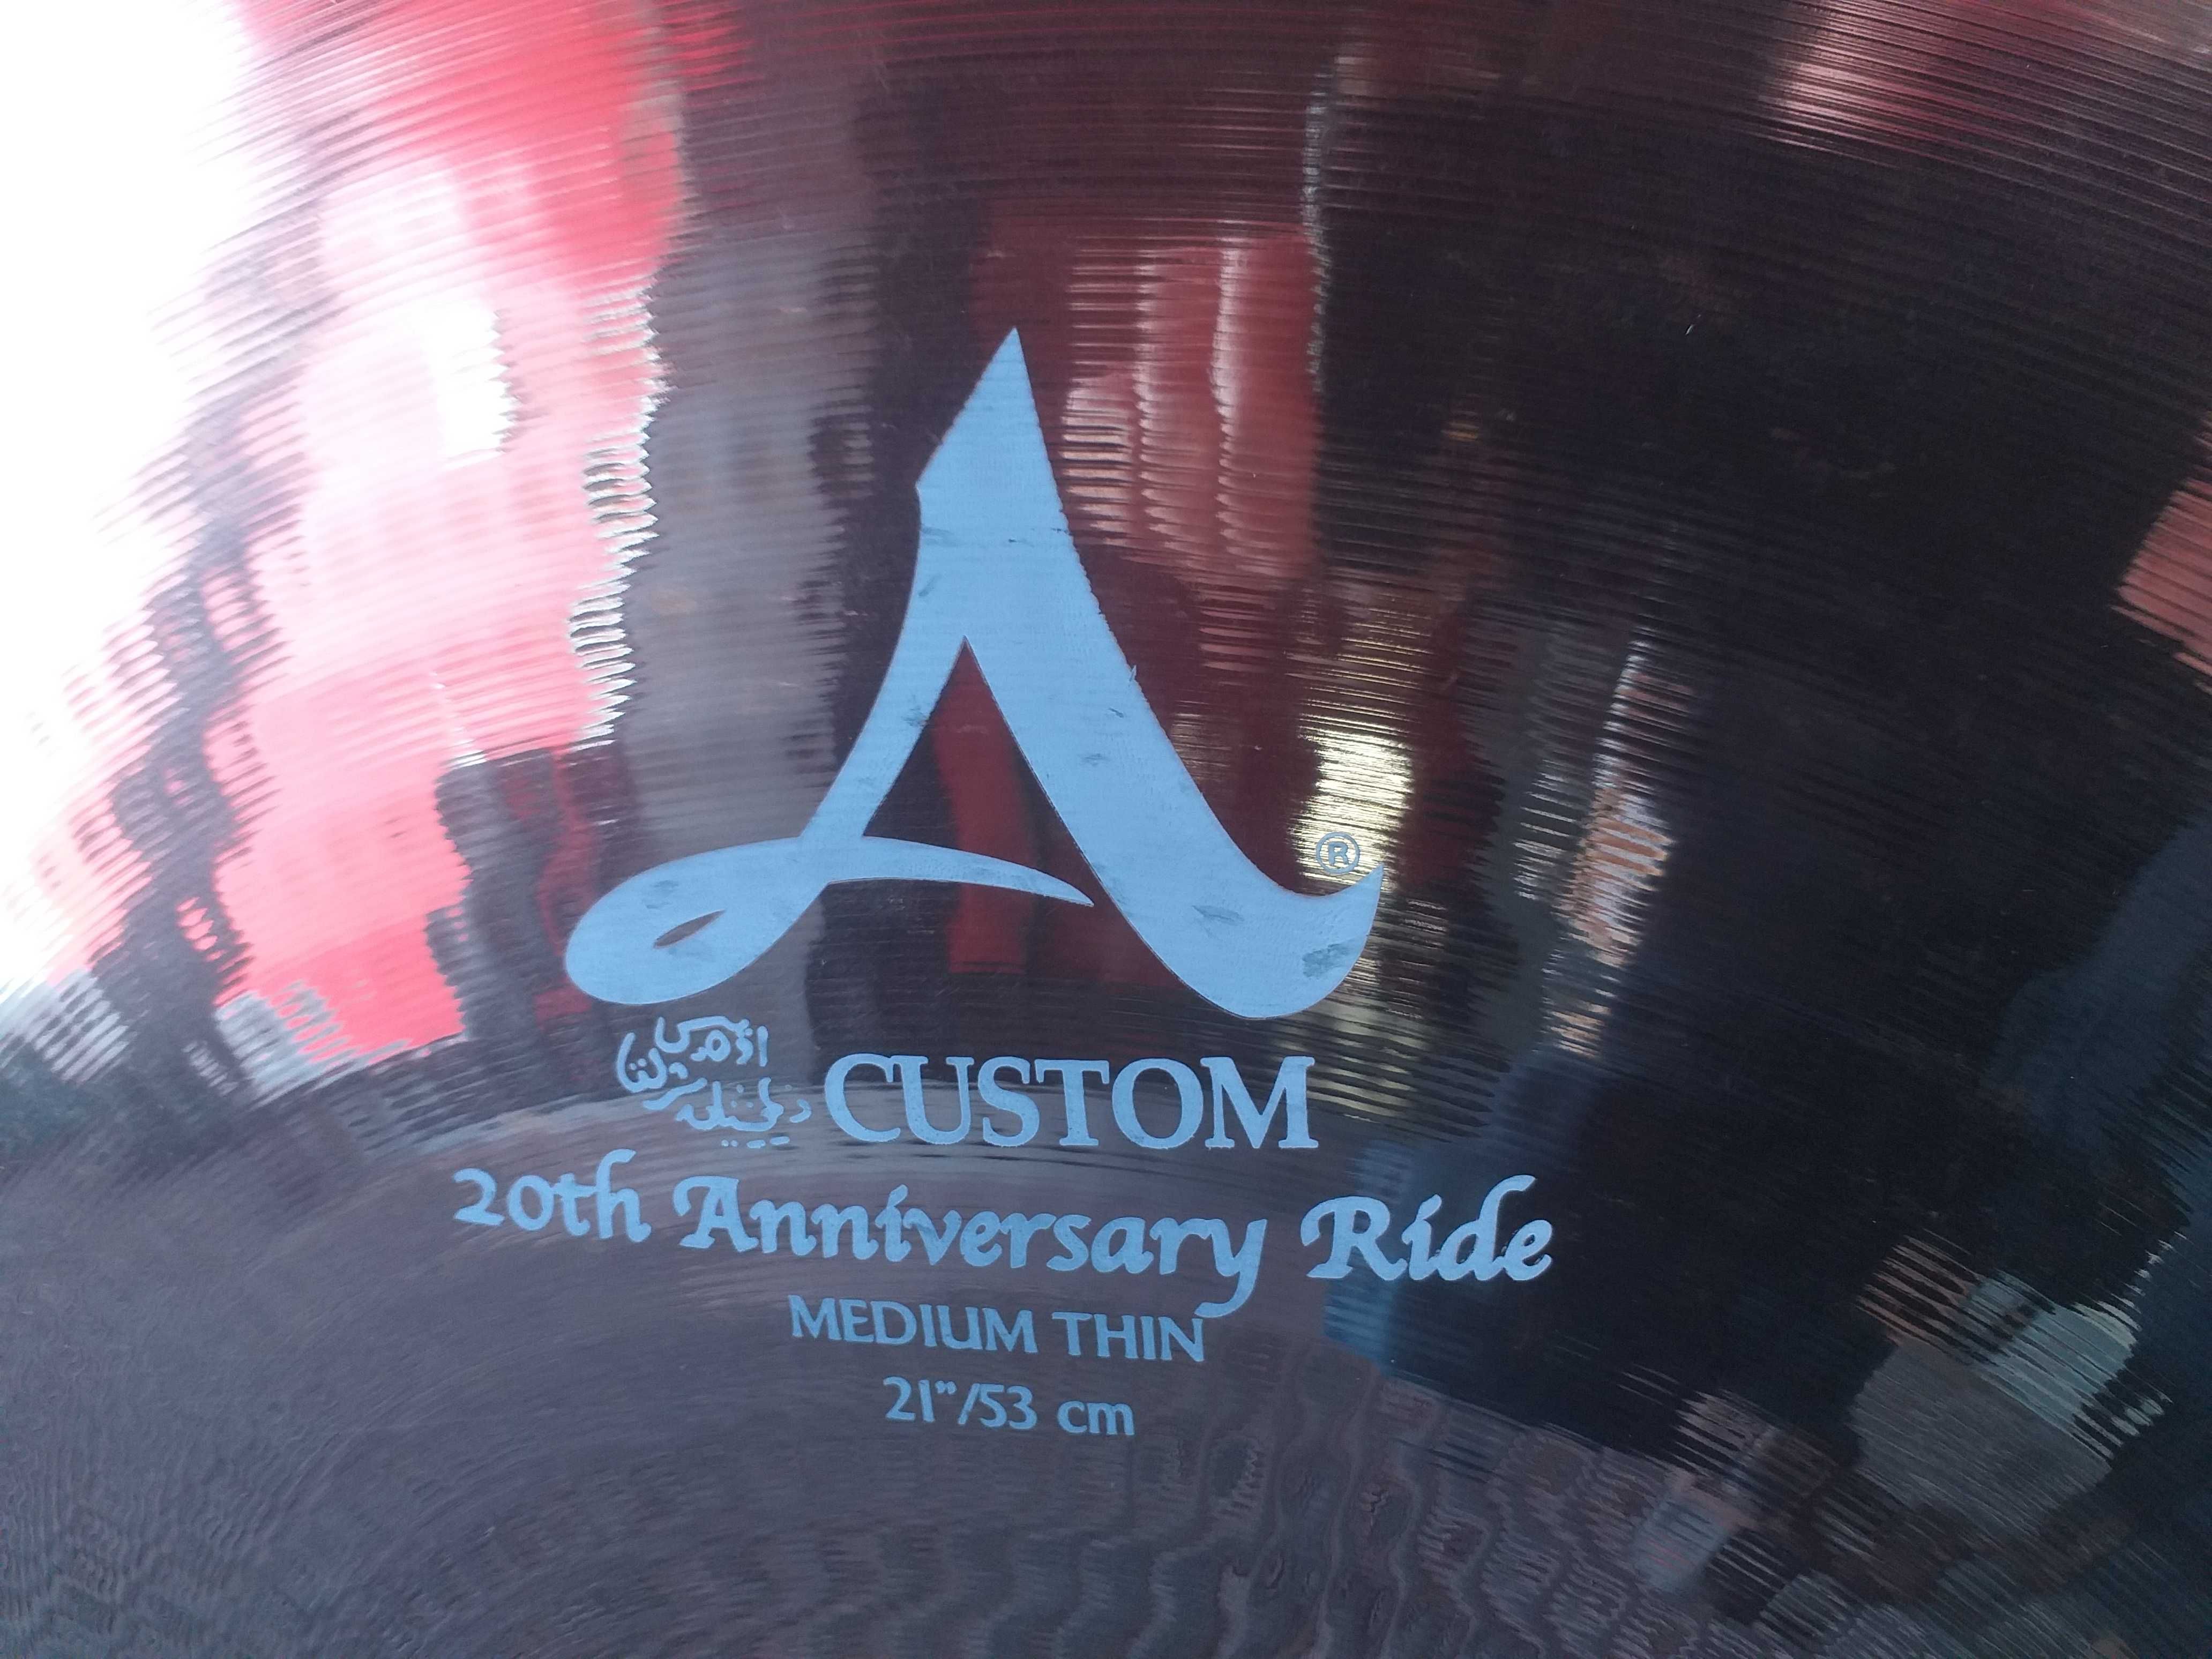 Talerz Zildjian A Custom Ride 20th Anniversary 21"